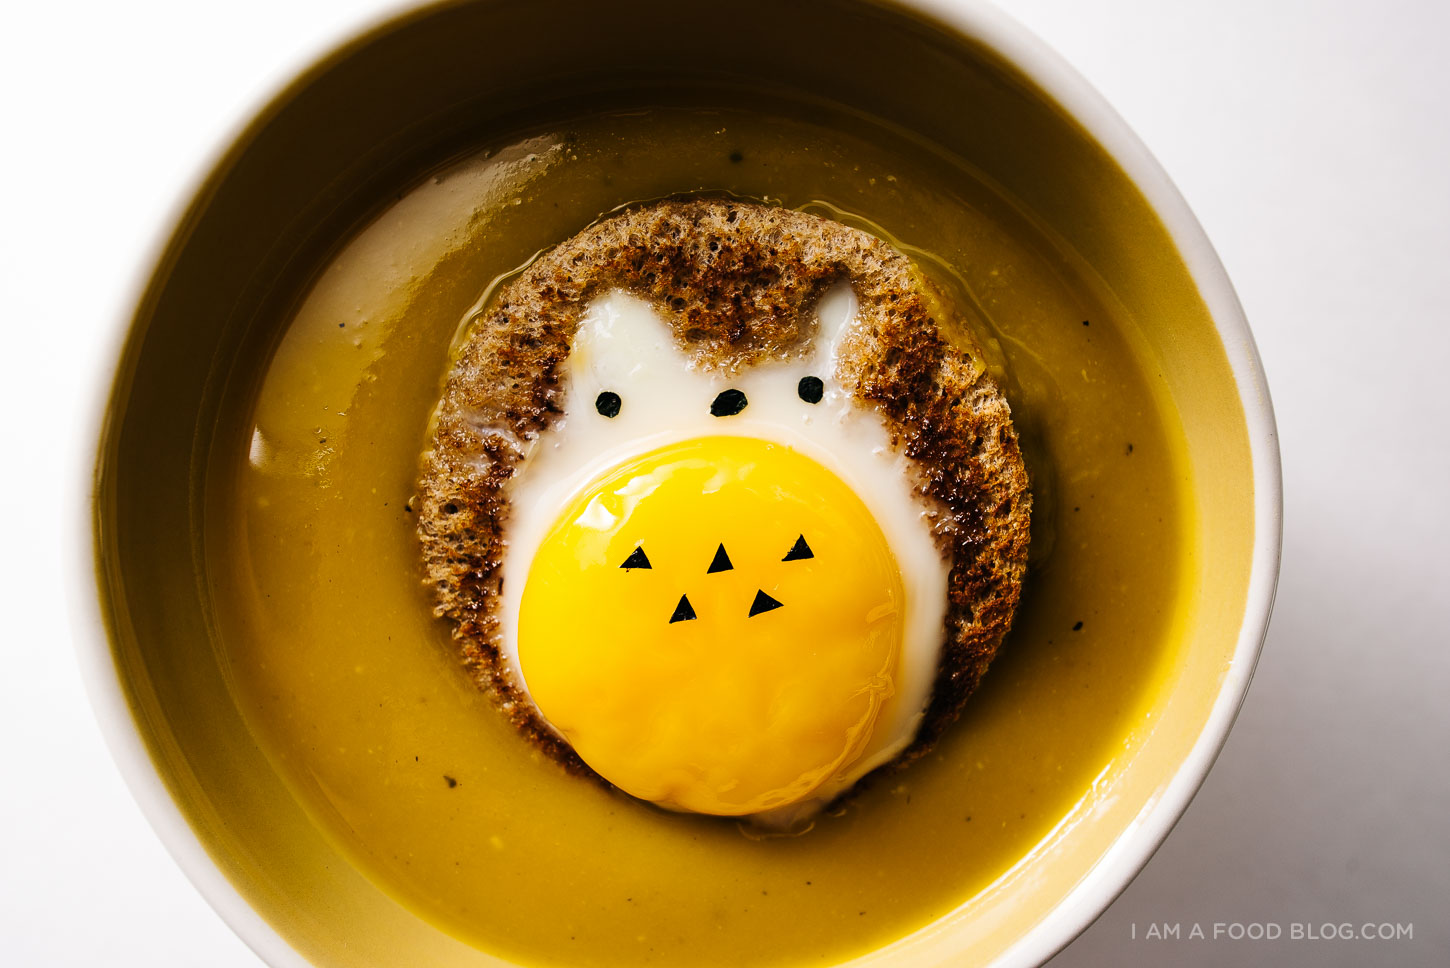 Receta fácil de sopa kabocha con huevo totoro en un hoyo - www.http://elcomensal.es/